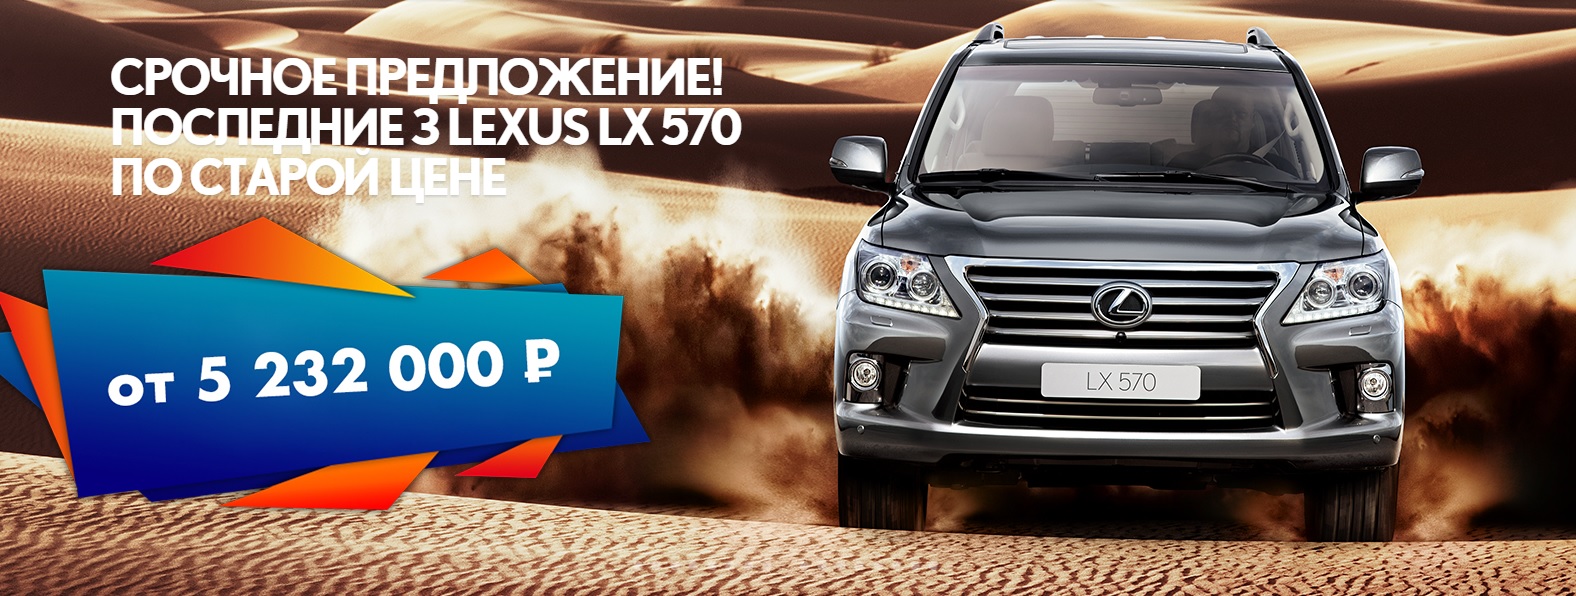 Последние 3 Lexus LX 570 в Лексус-Ясенево. Спешите!